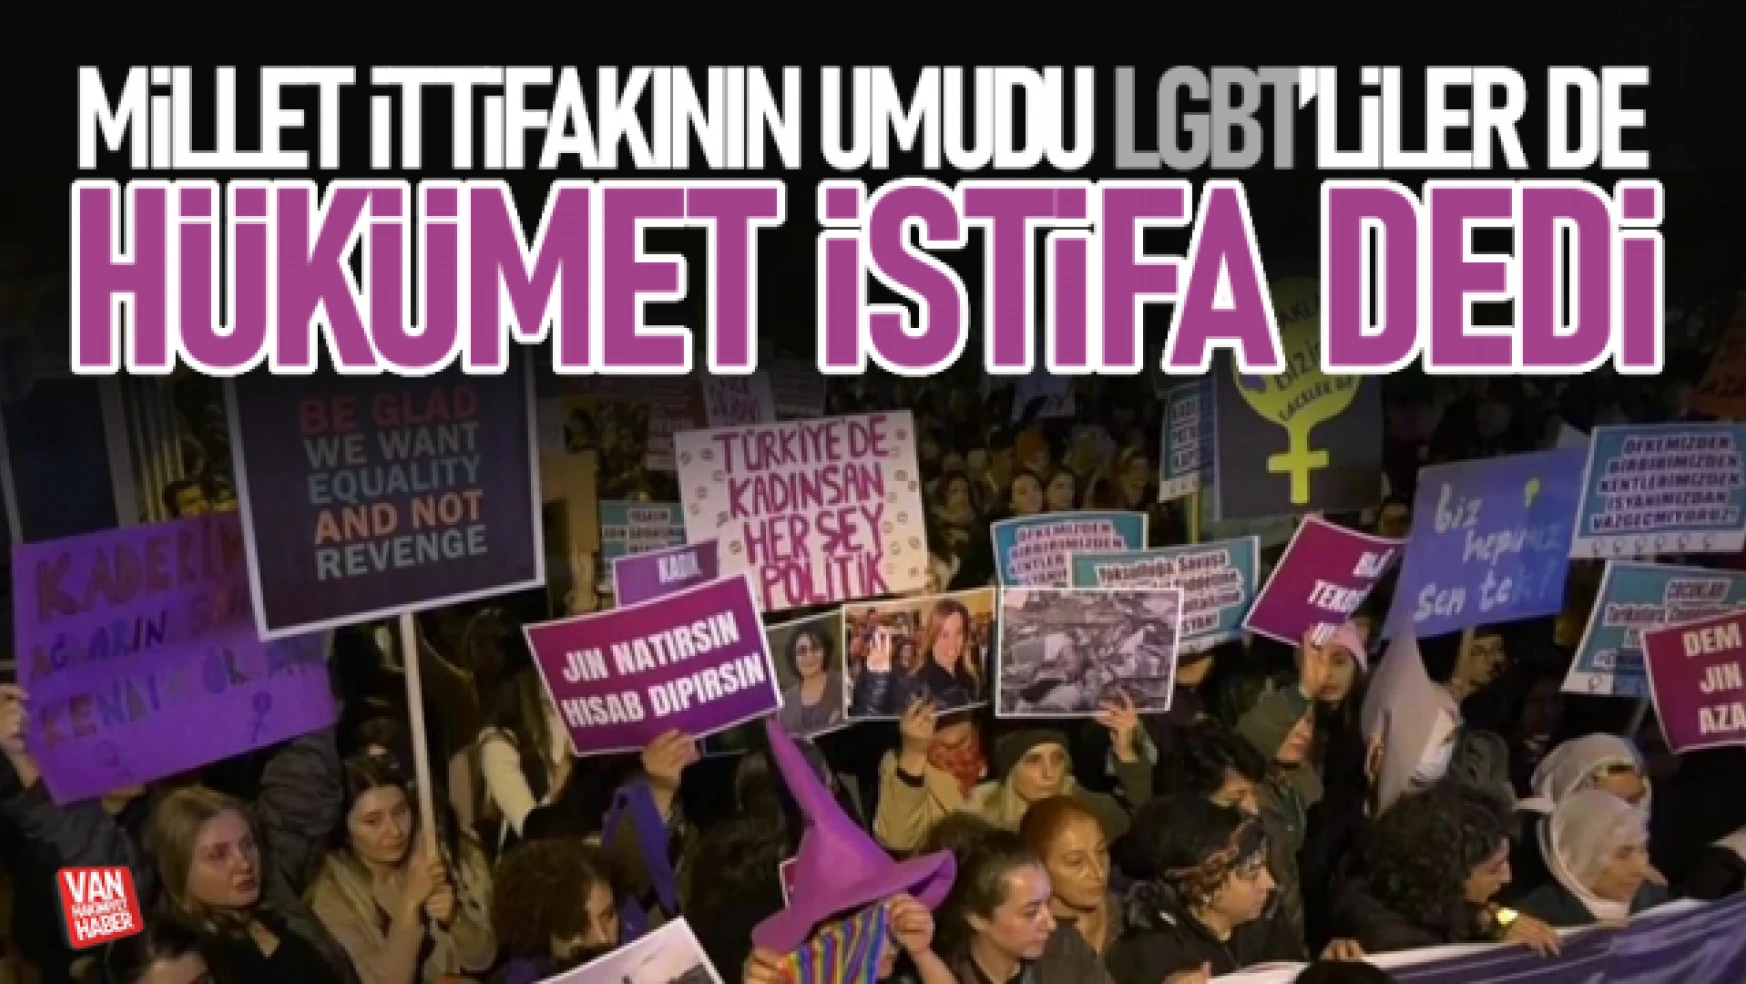 İzmir'de LGBT'liler hükümet istifa diye bağırdı! Polise saldırdı